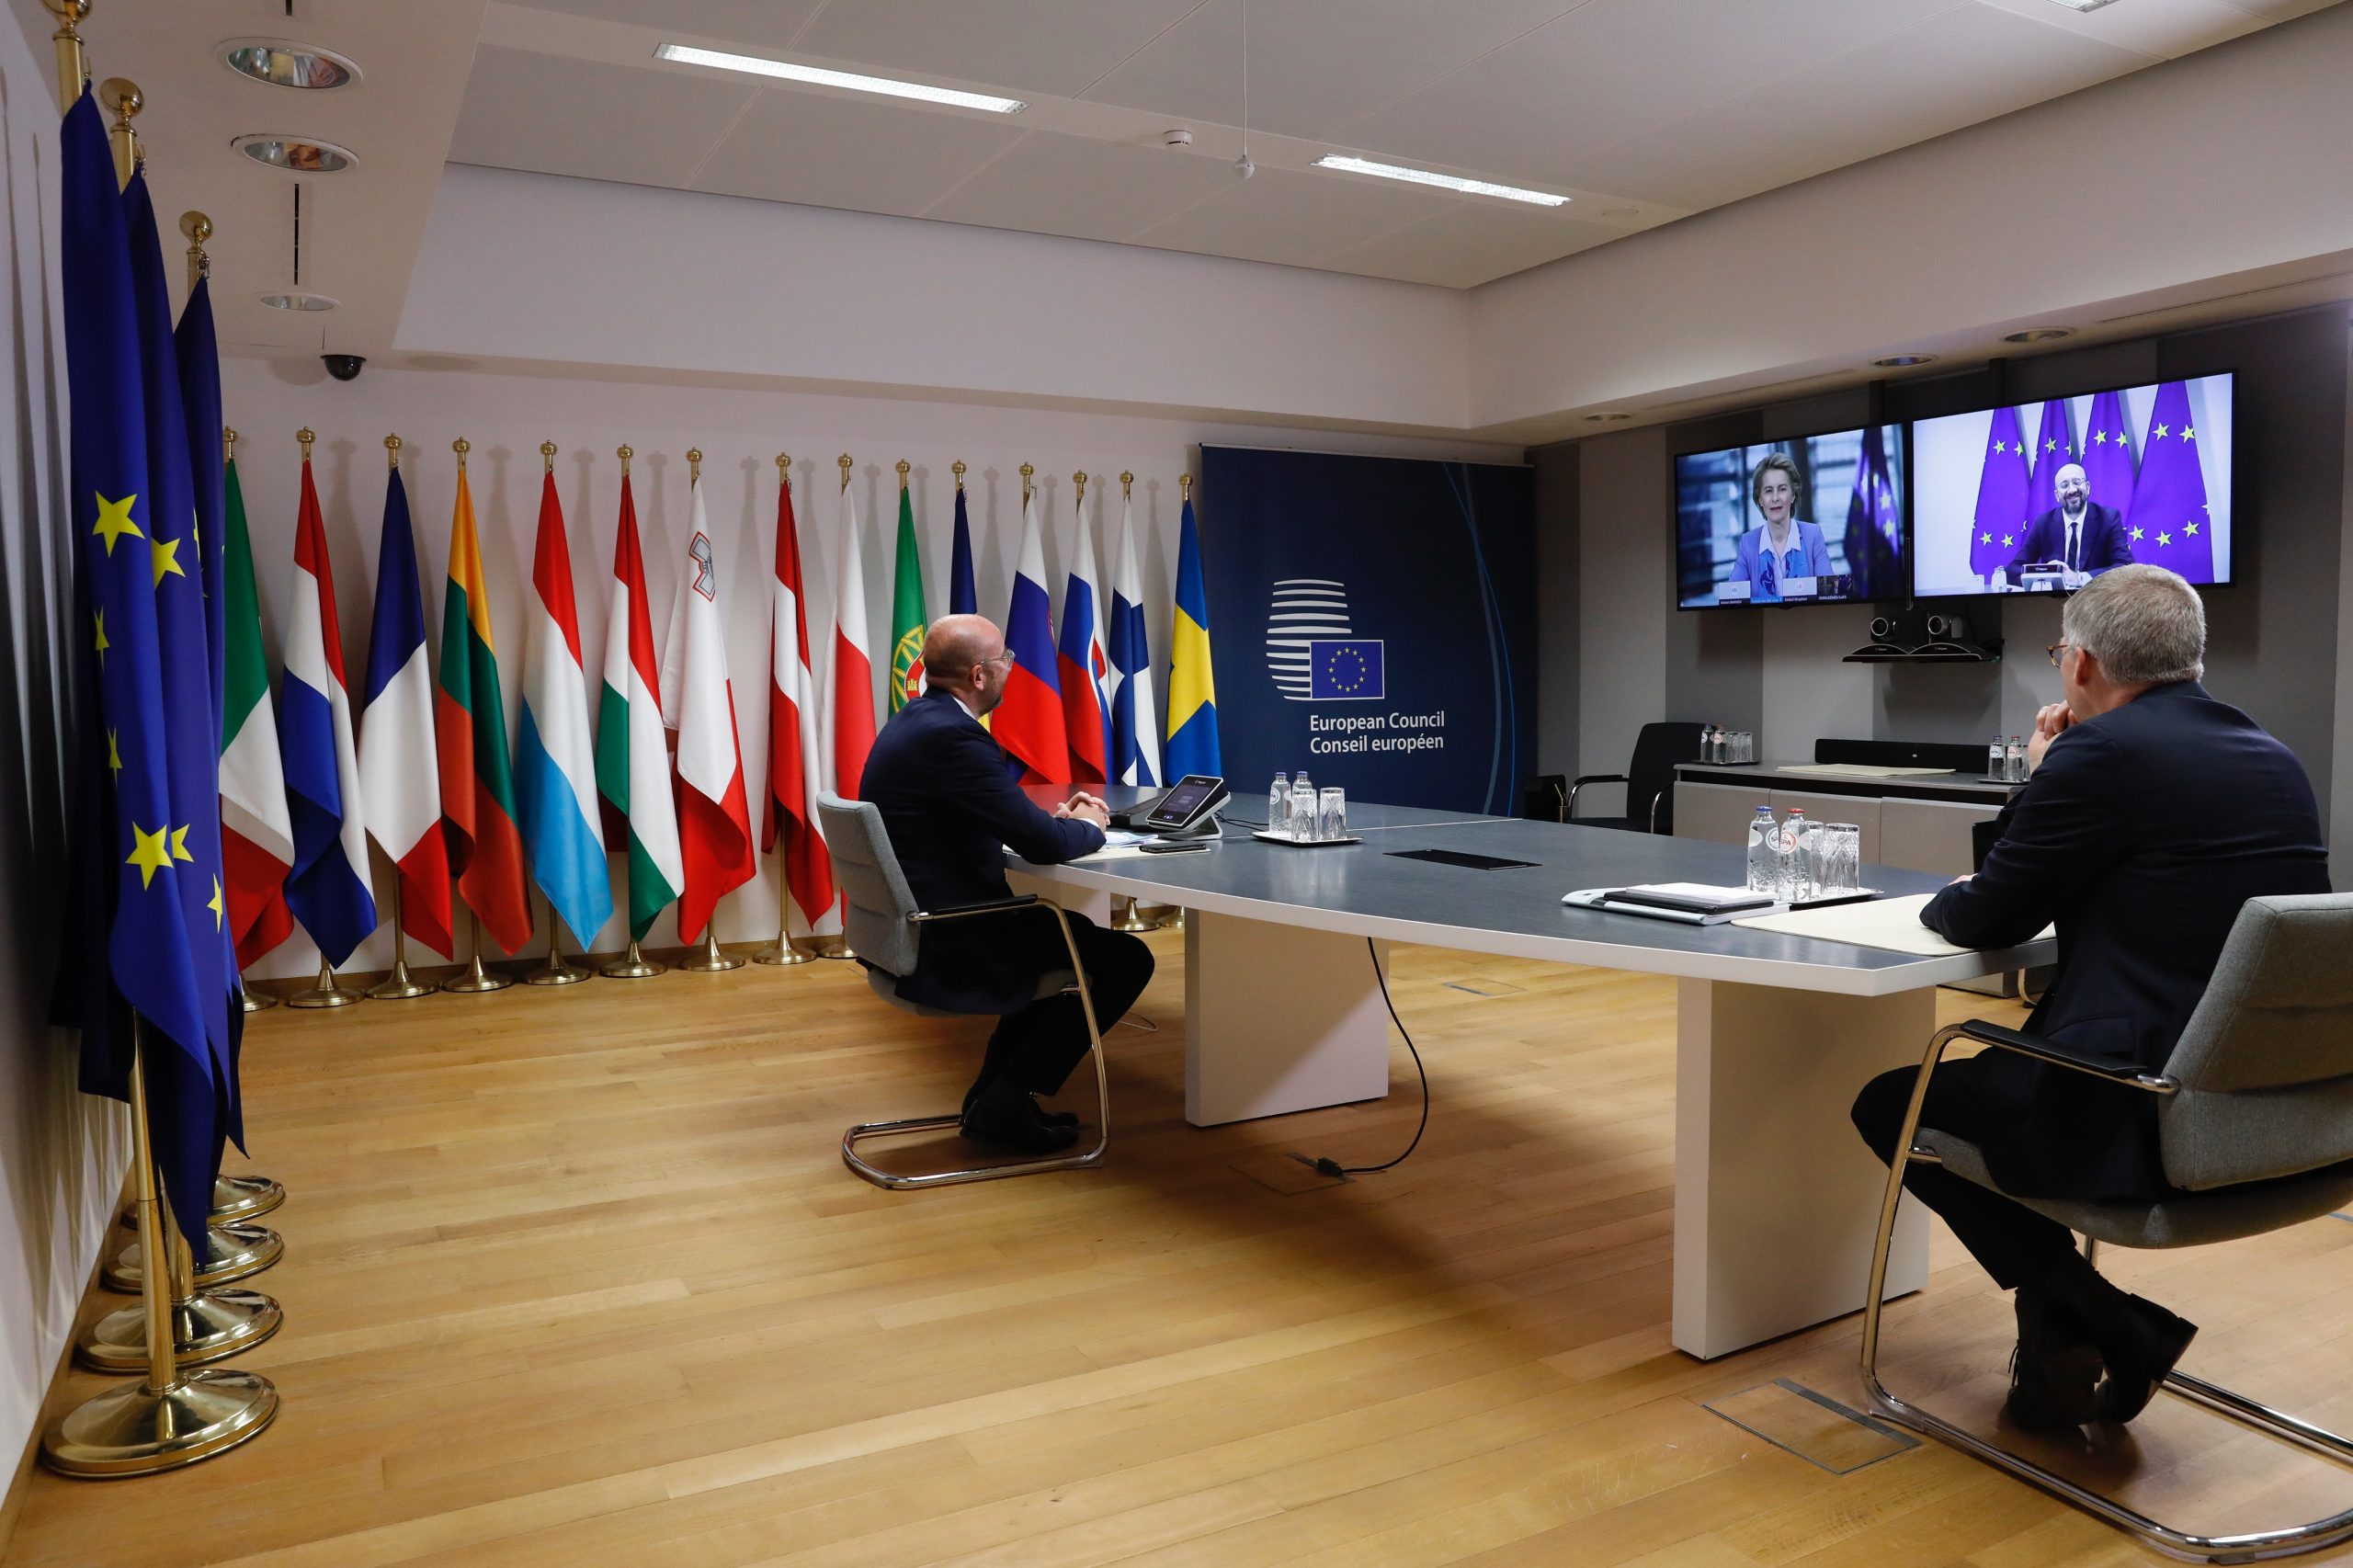 Zdjecie przedstawia Przewodniczącego Rady Europejskiej podczas wideokonferencji z premierem Wielkiej Brytanii.